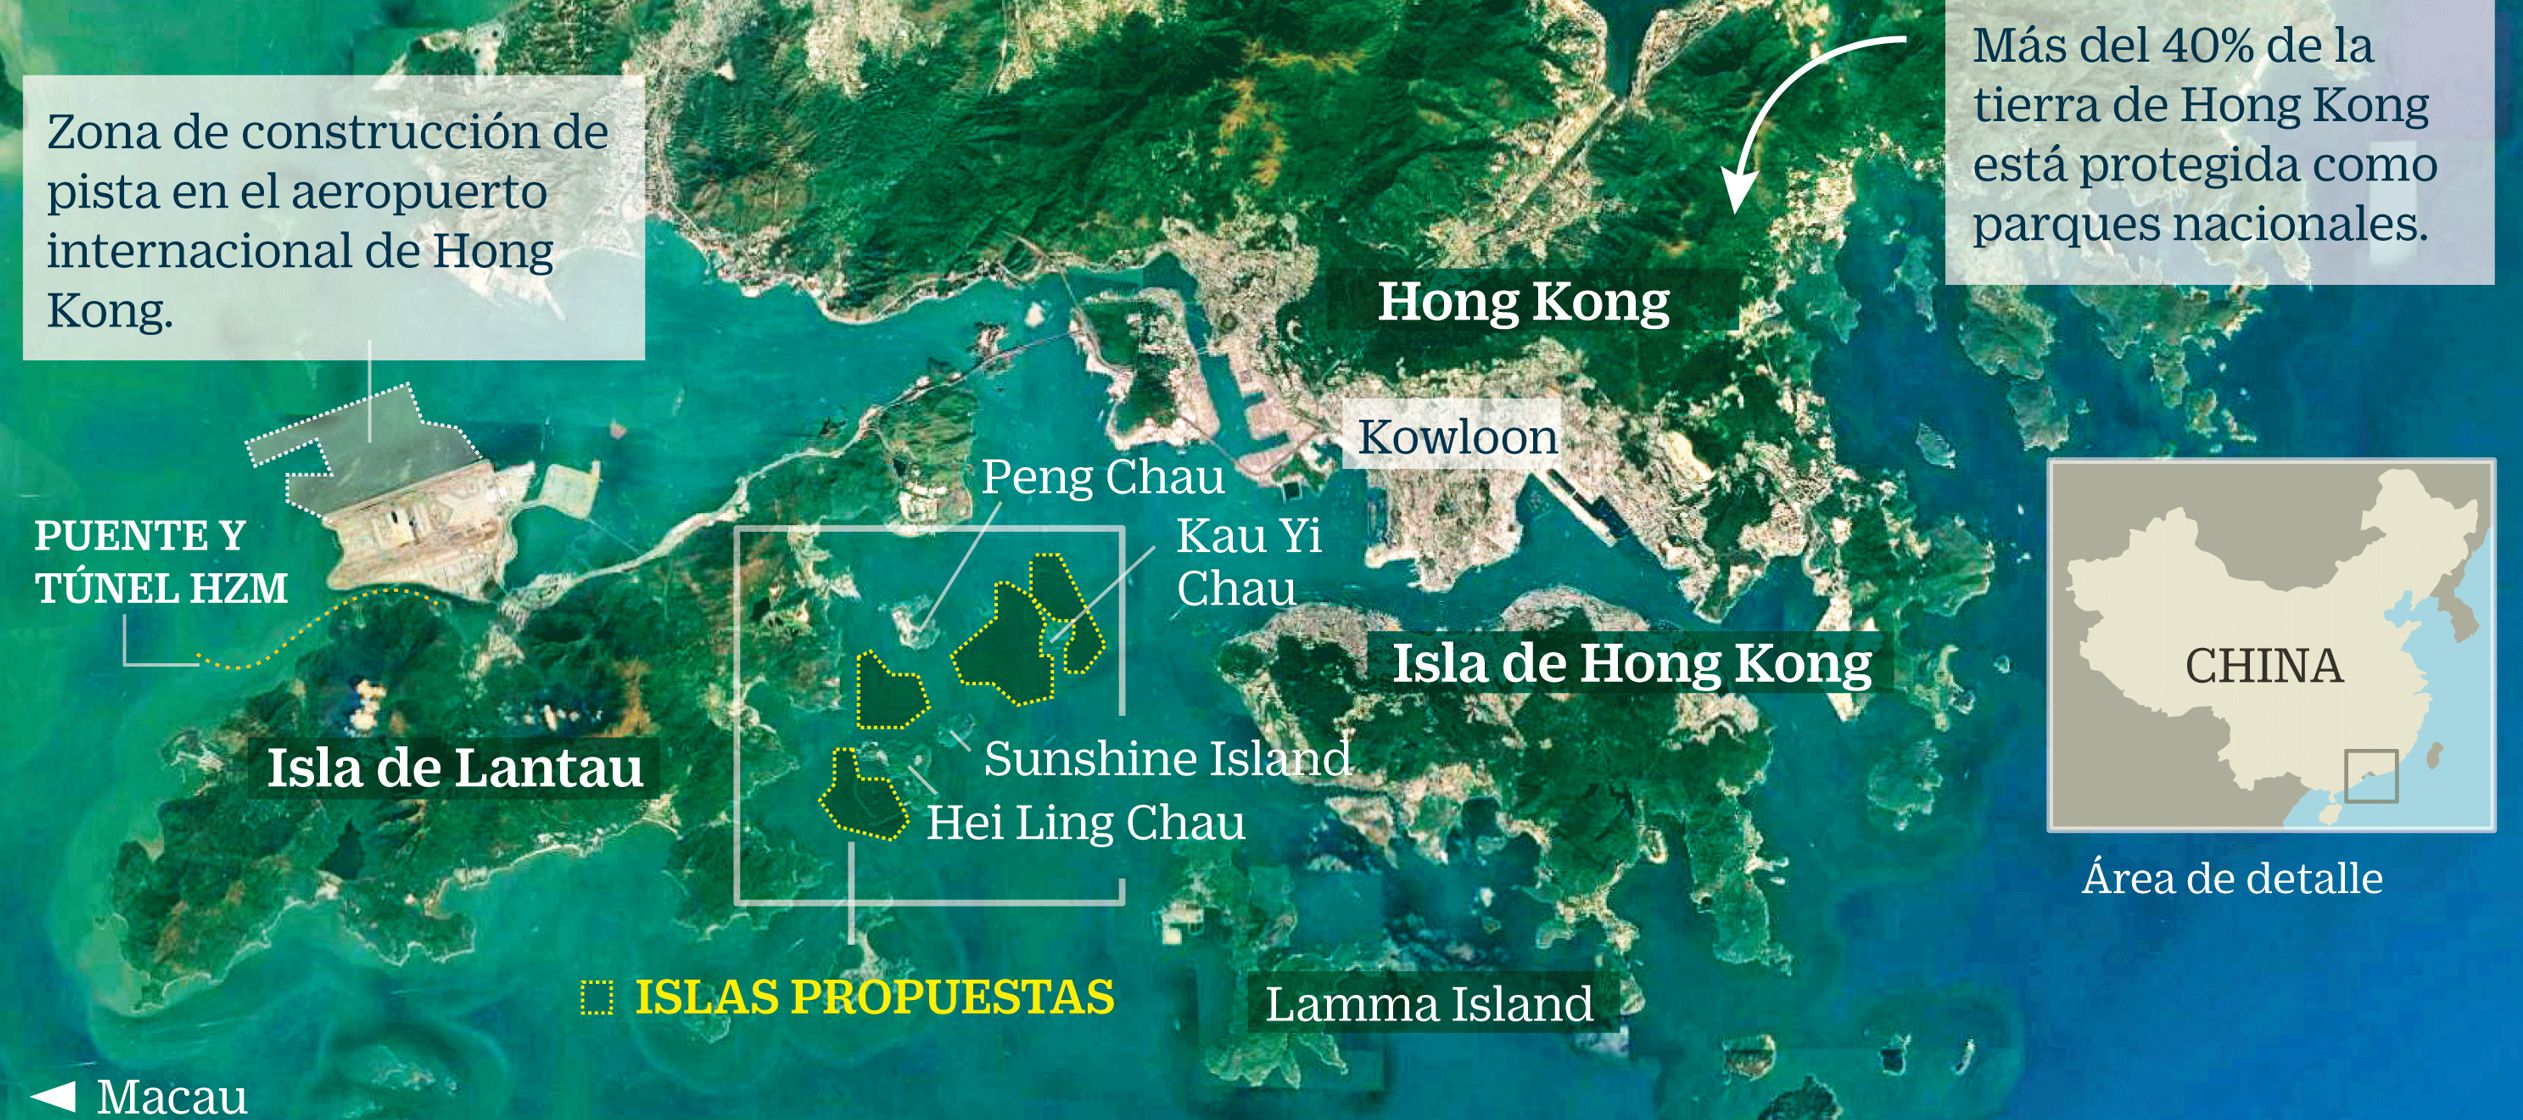 El proyecto supondrá al menos un gasto de 500,000 millones dólares de Hong Kong...